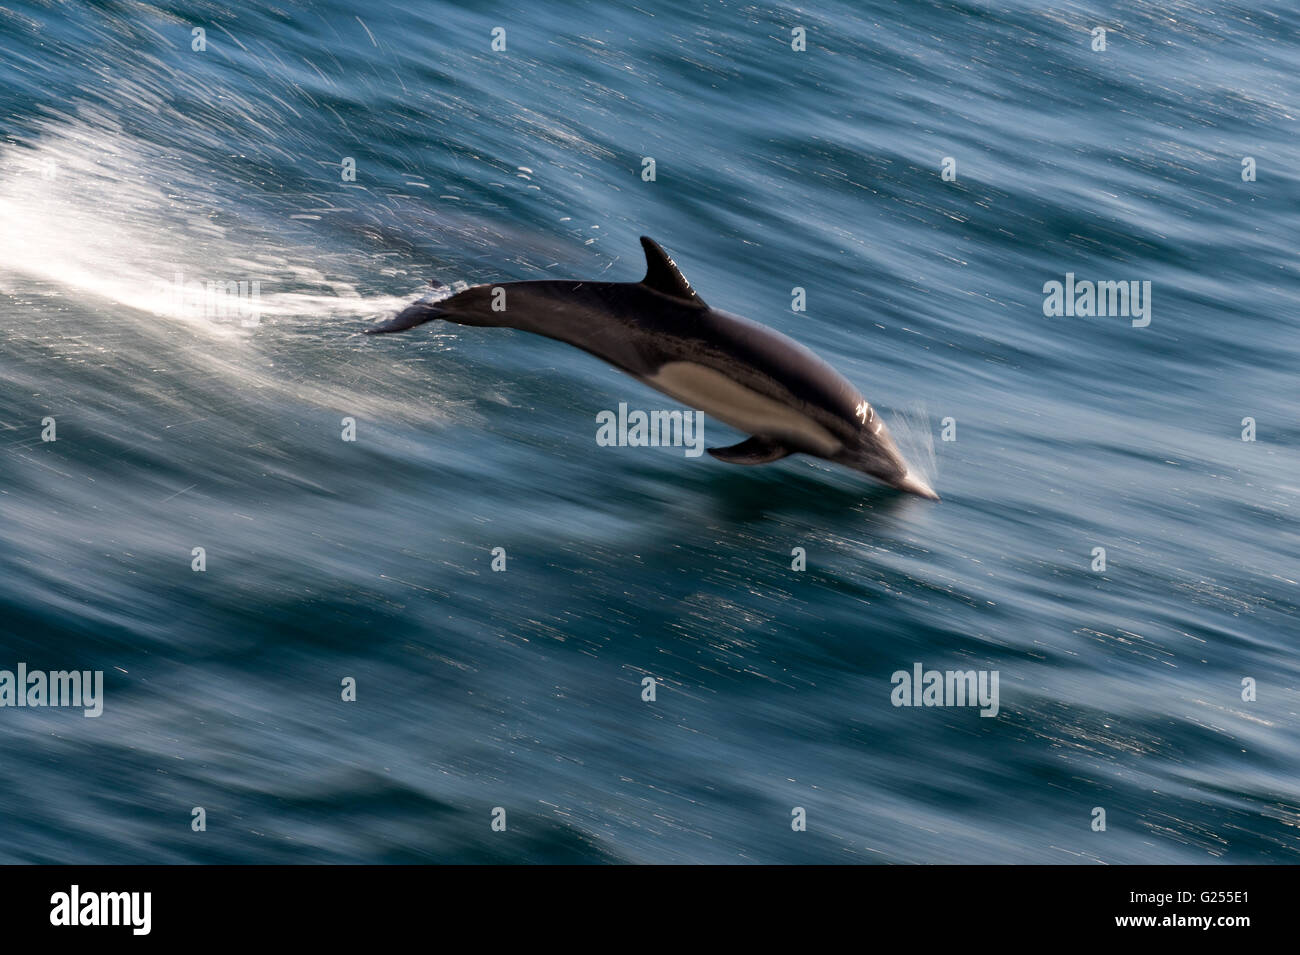 Larga picuda delfín común del Océano Pacífico, Baja California, México Foto de stock